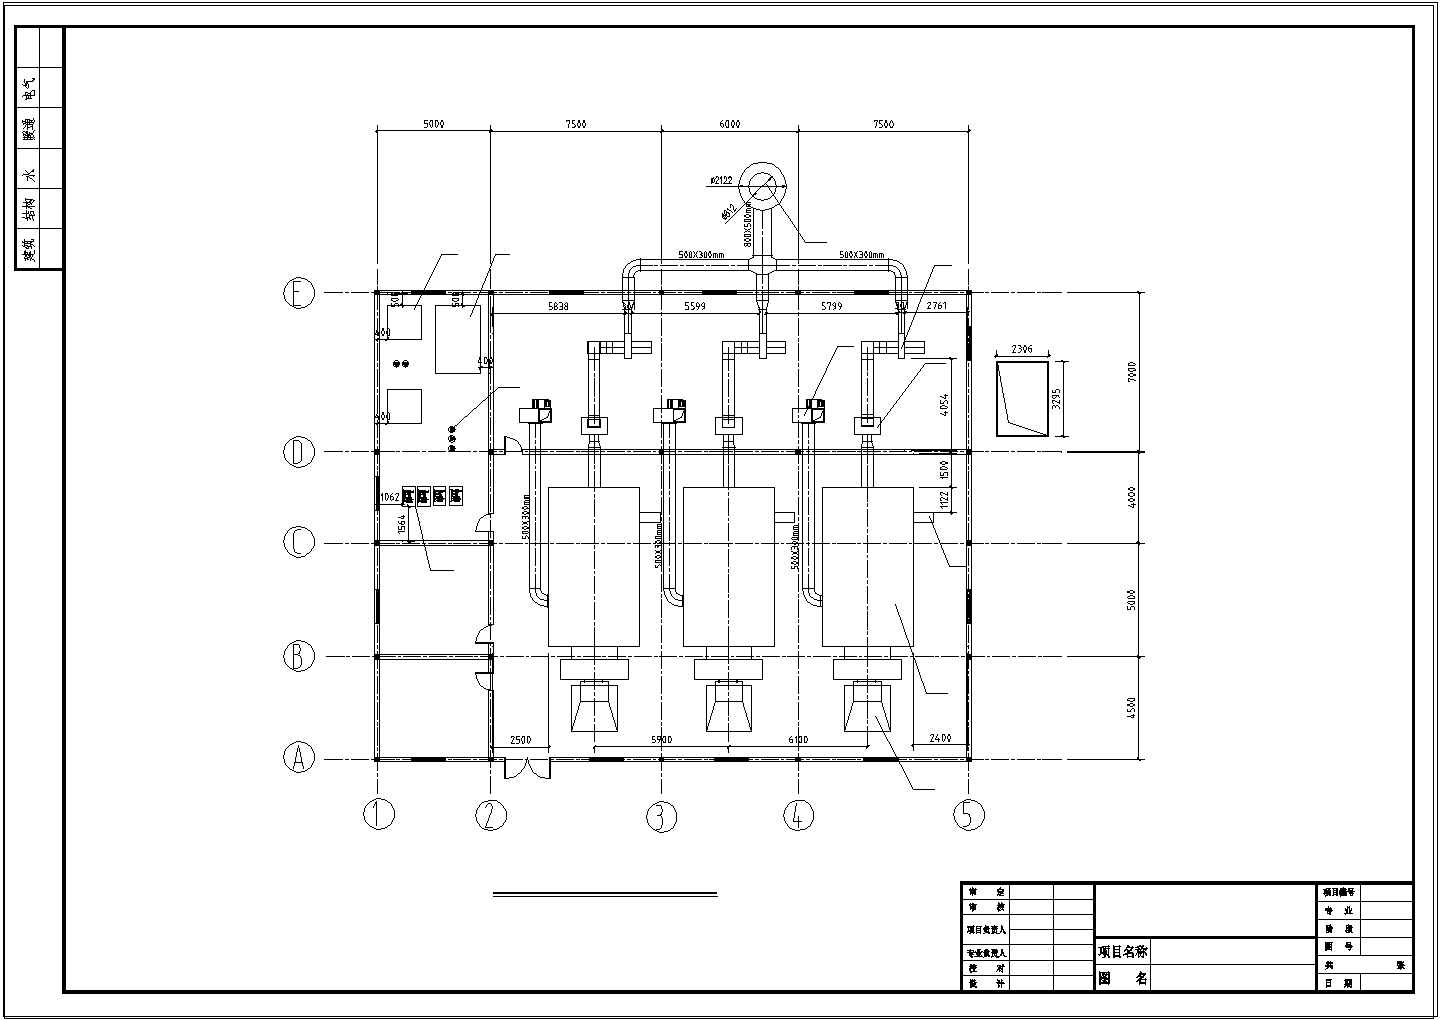 锅炉设备与锅炉房细节展示图